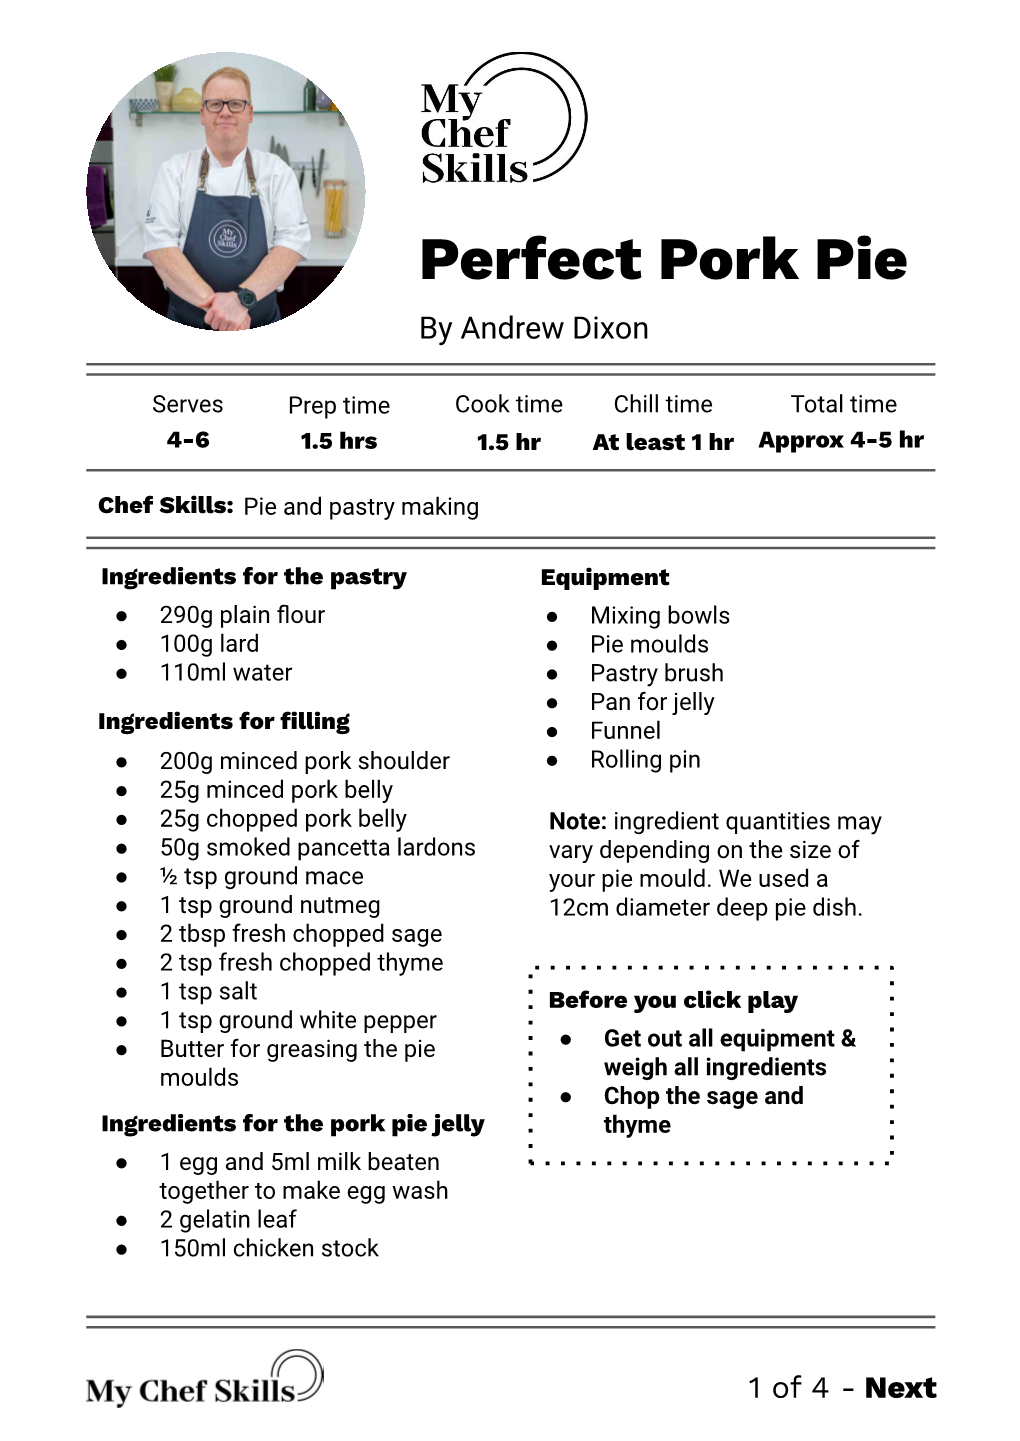 Perfect Pork Pie by Andrew Dixon